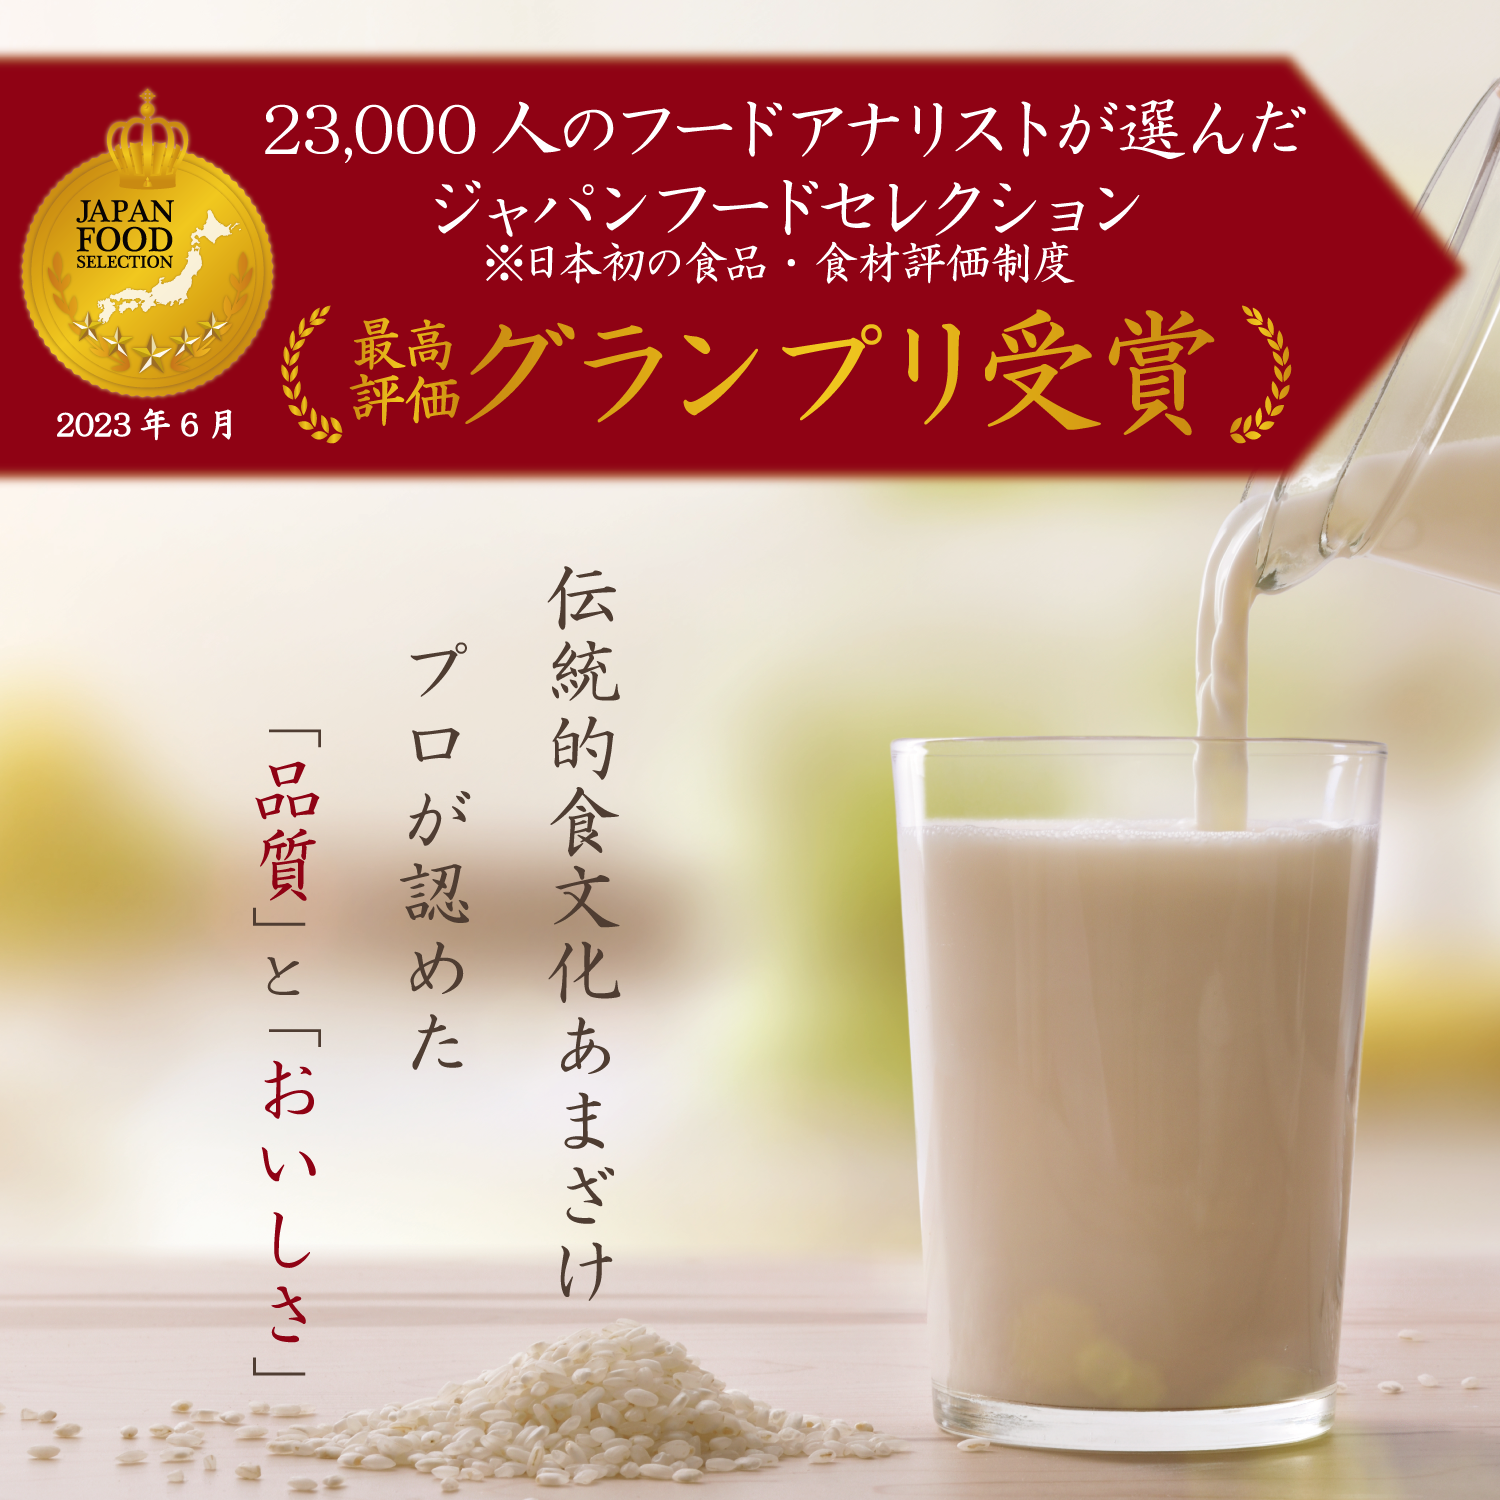 甘酒史上初！「お米と米麹でつくったあまざけ1000ml」が
第64回「ジャパン・フード・セレクション」グランプリを受賞！